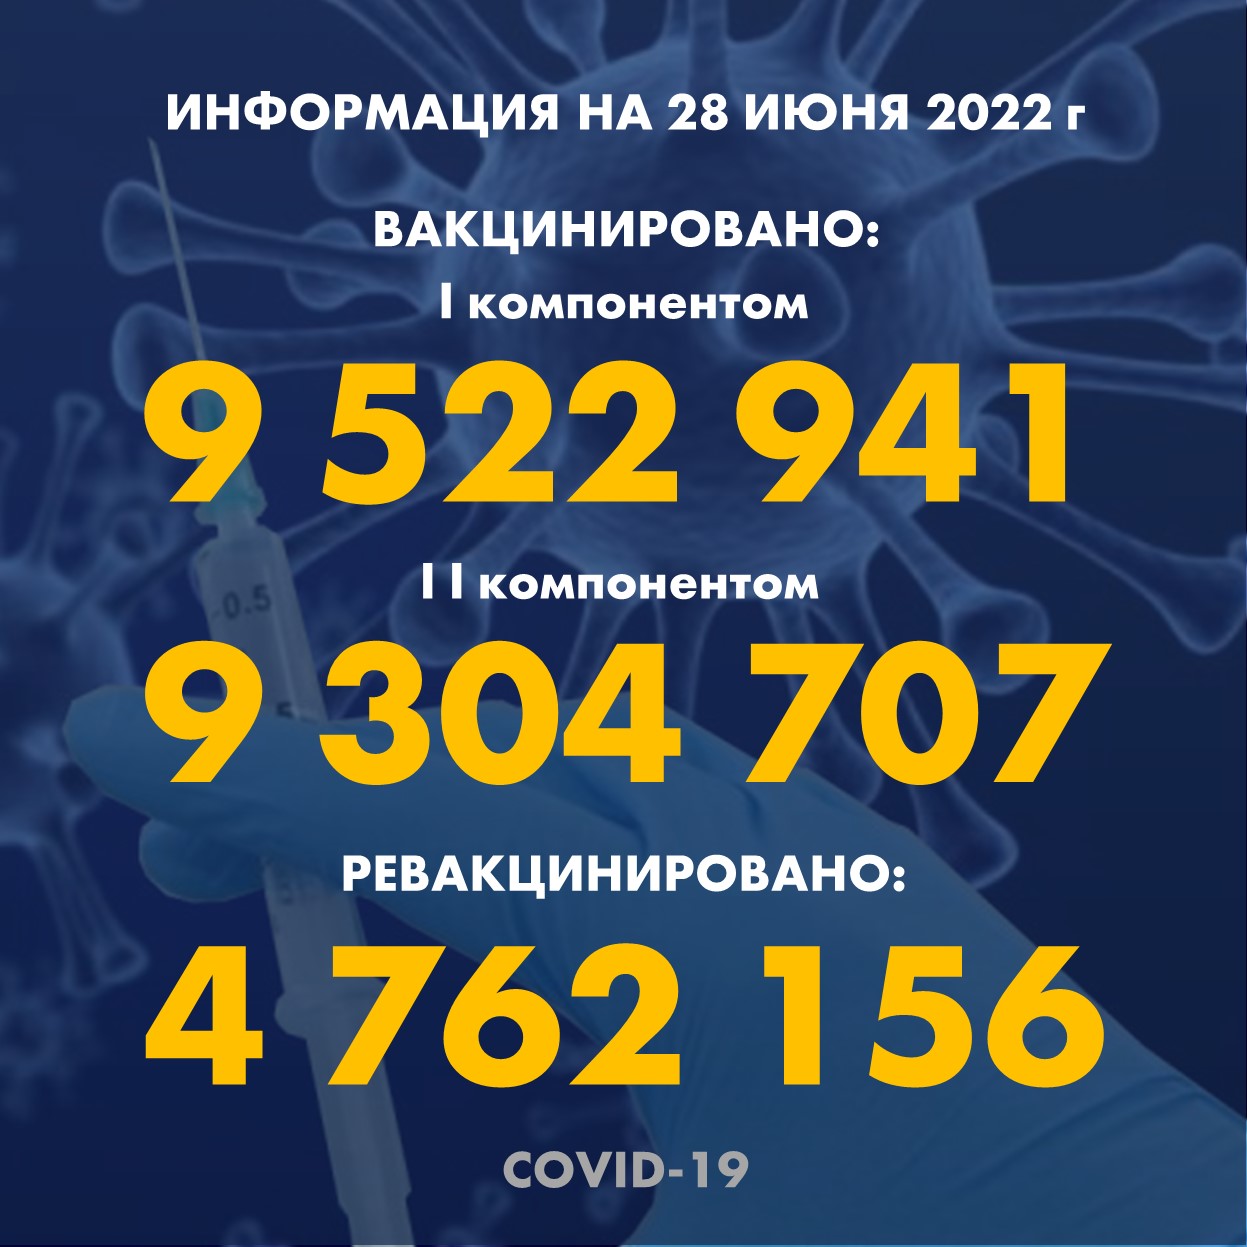 I компонентом 9 522 941 человек провакцинировано в Казахстане на 28.06.2022 г, II компонентом 9 304 707 человек. Ревакцинировано – 4 762 156